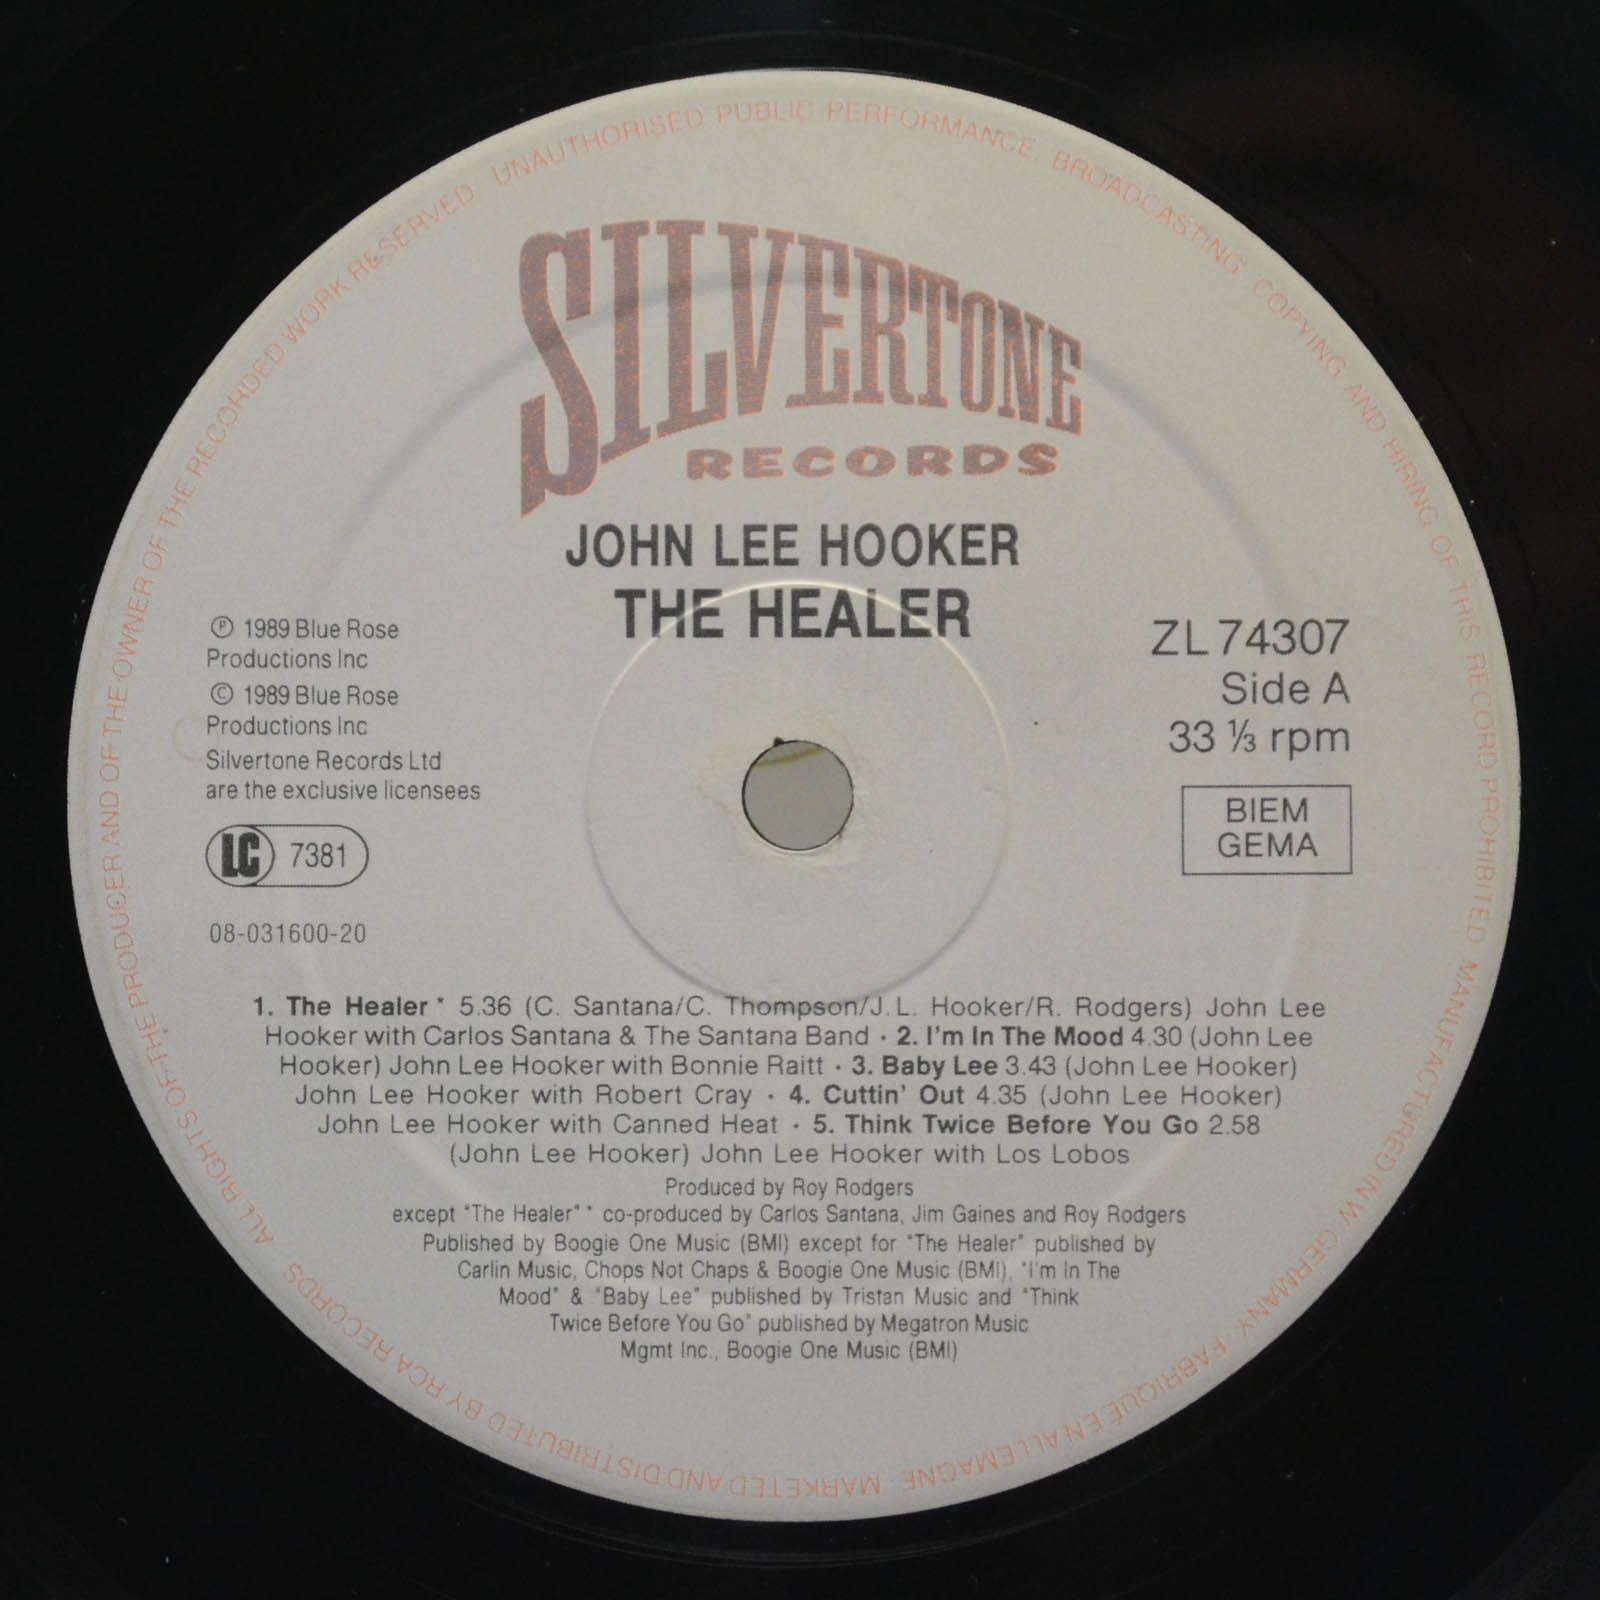 John Lee Hooker — The Healer, 1989